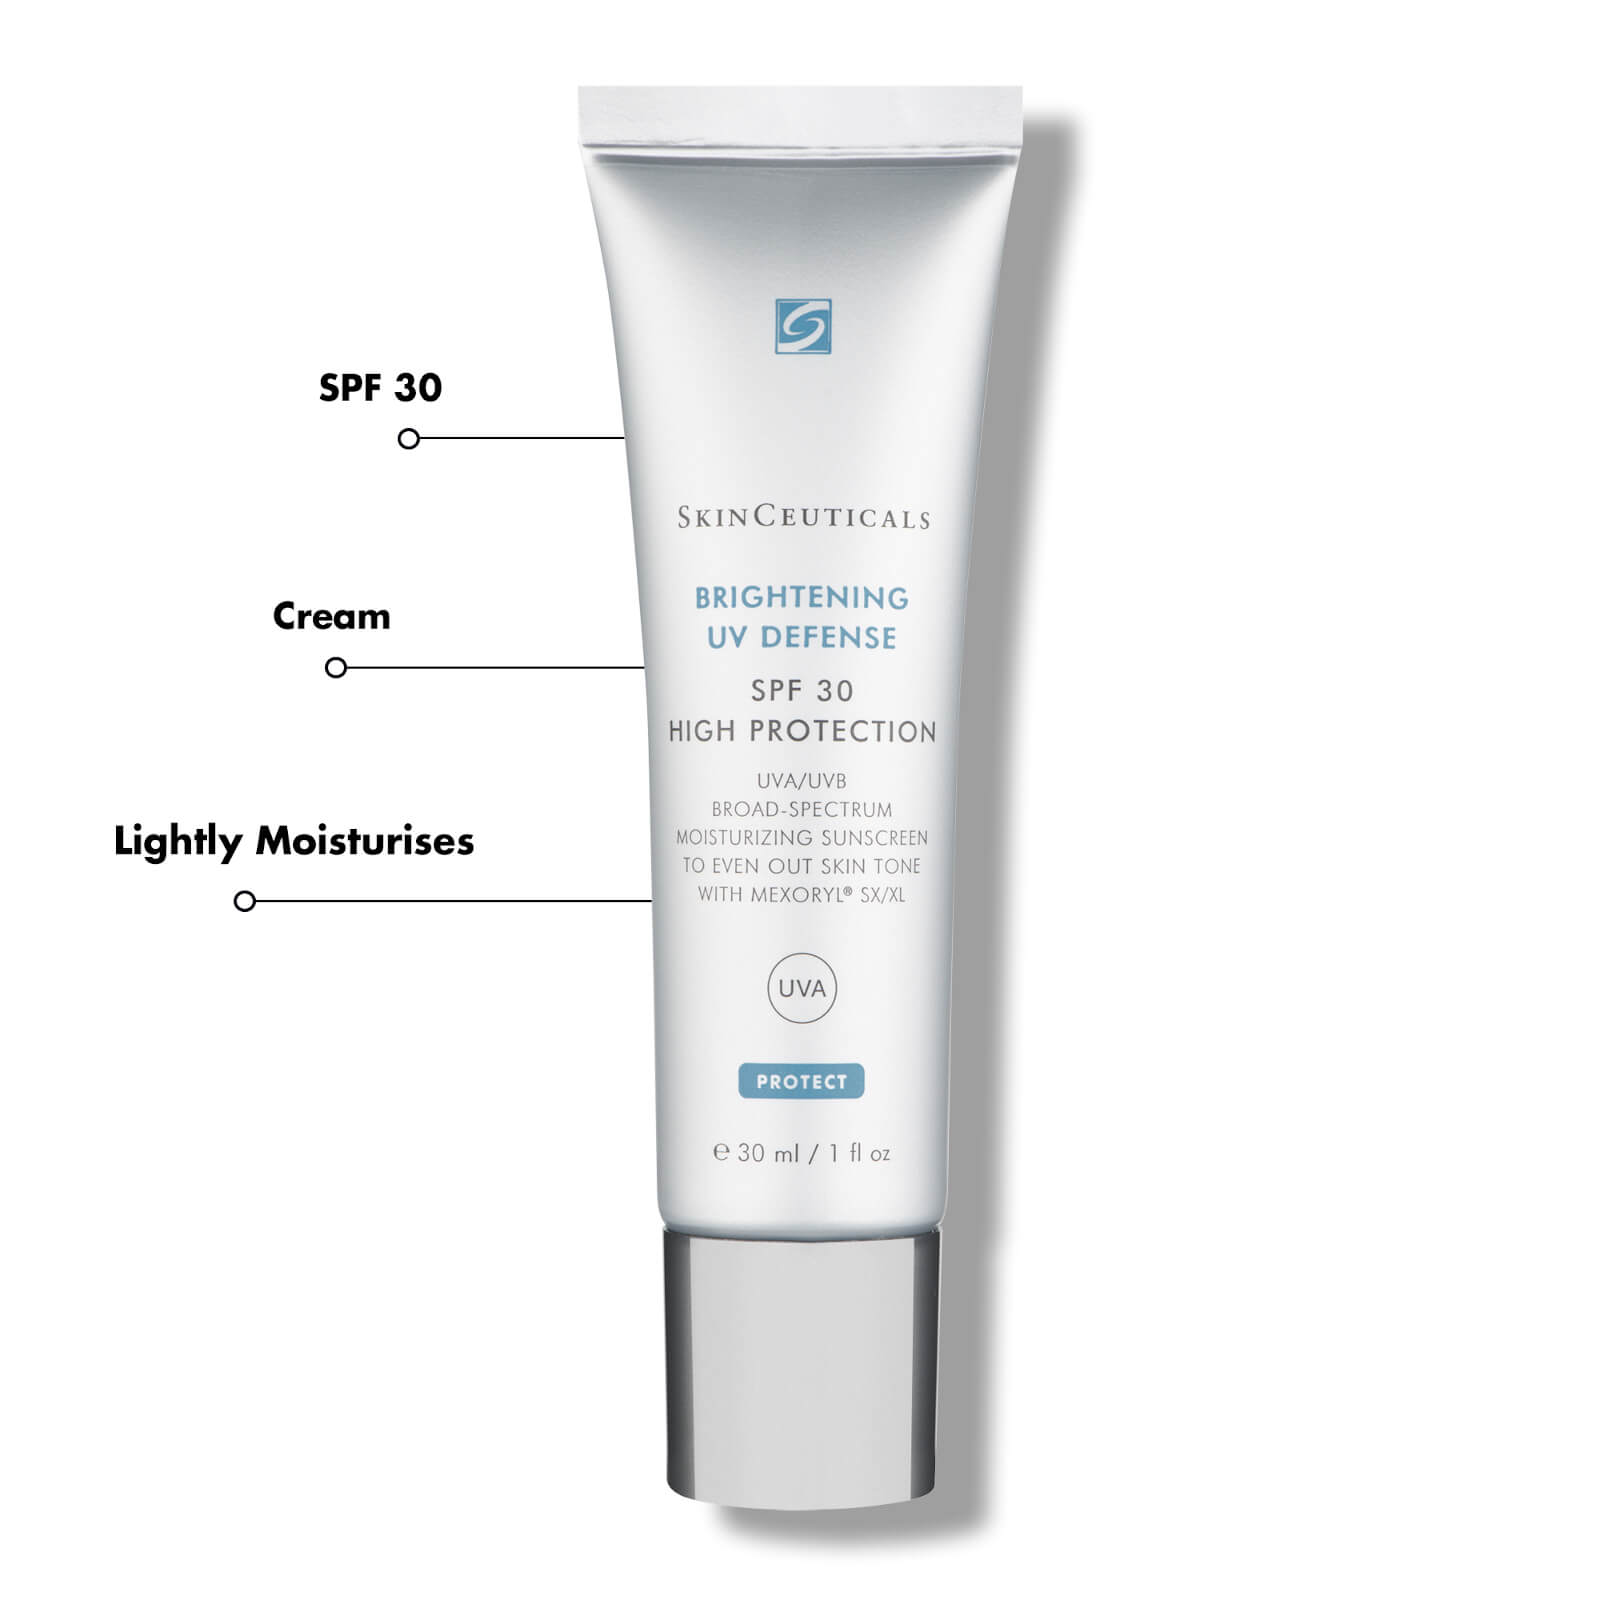 SkinCeuticals SkinCeuticals | Brightening UV Defense SPF30 - SkinShop